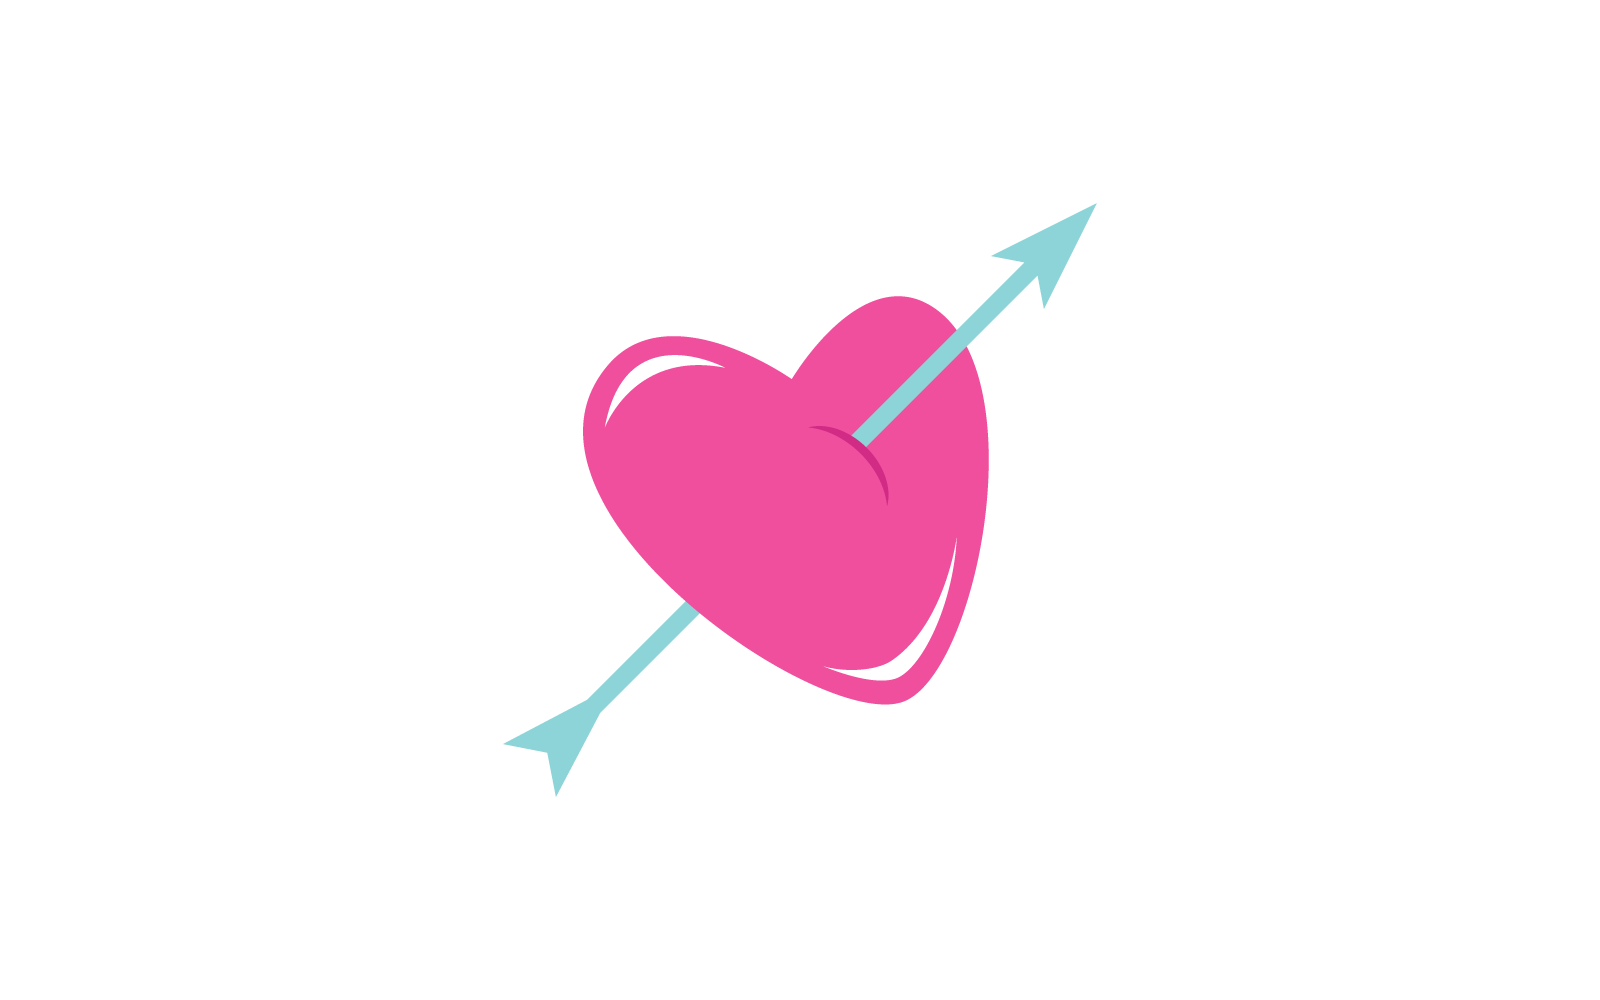 Love arrow logo vector design